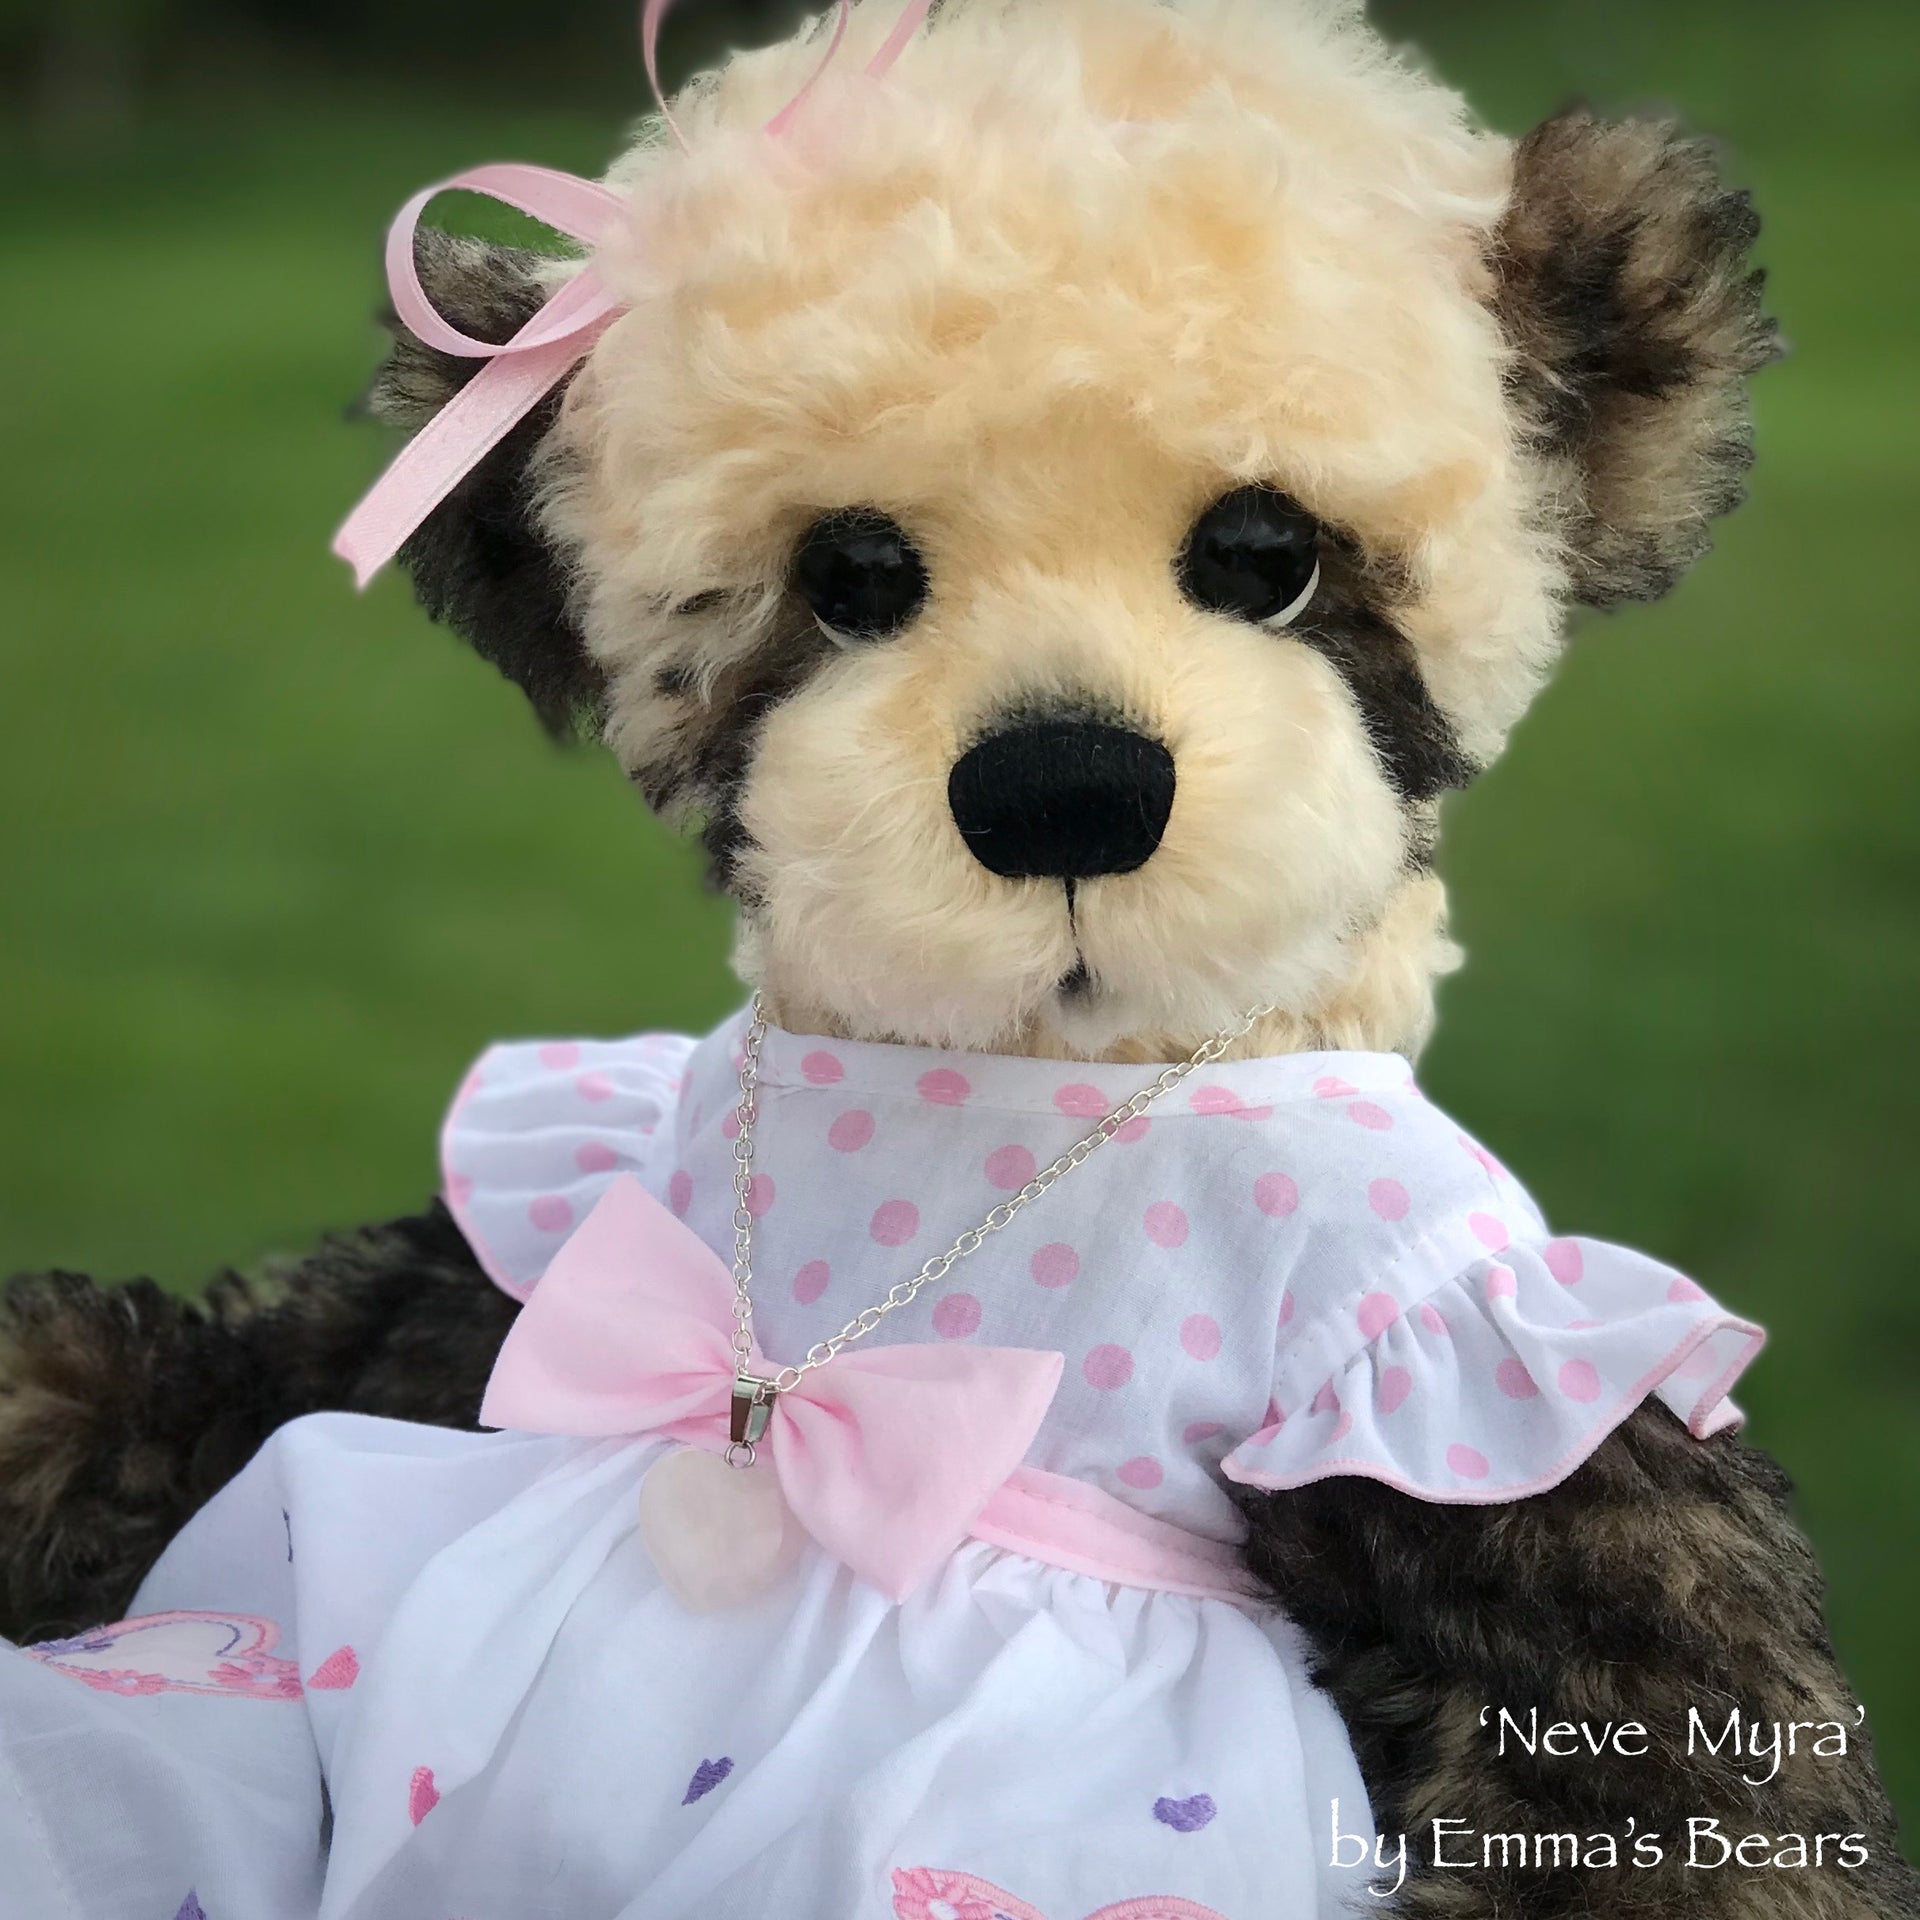 Neve Myra - 15" Mohair Artist baby style Bear by Emma's Bears - OOAK